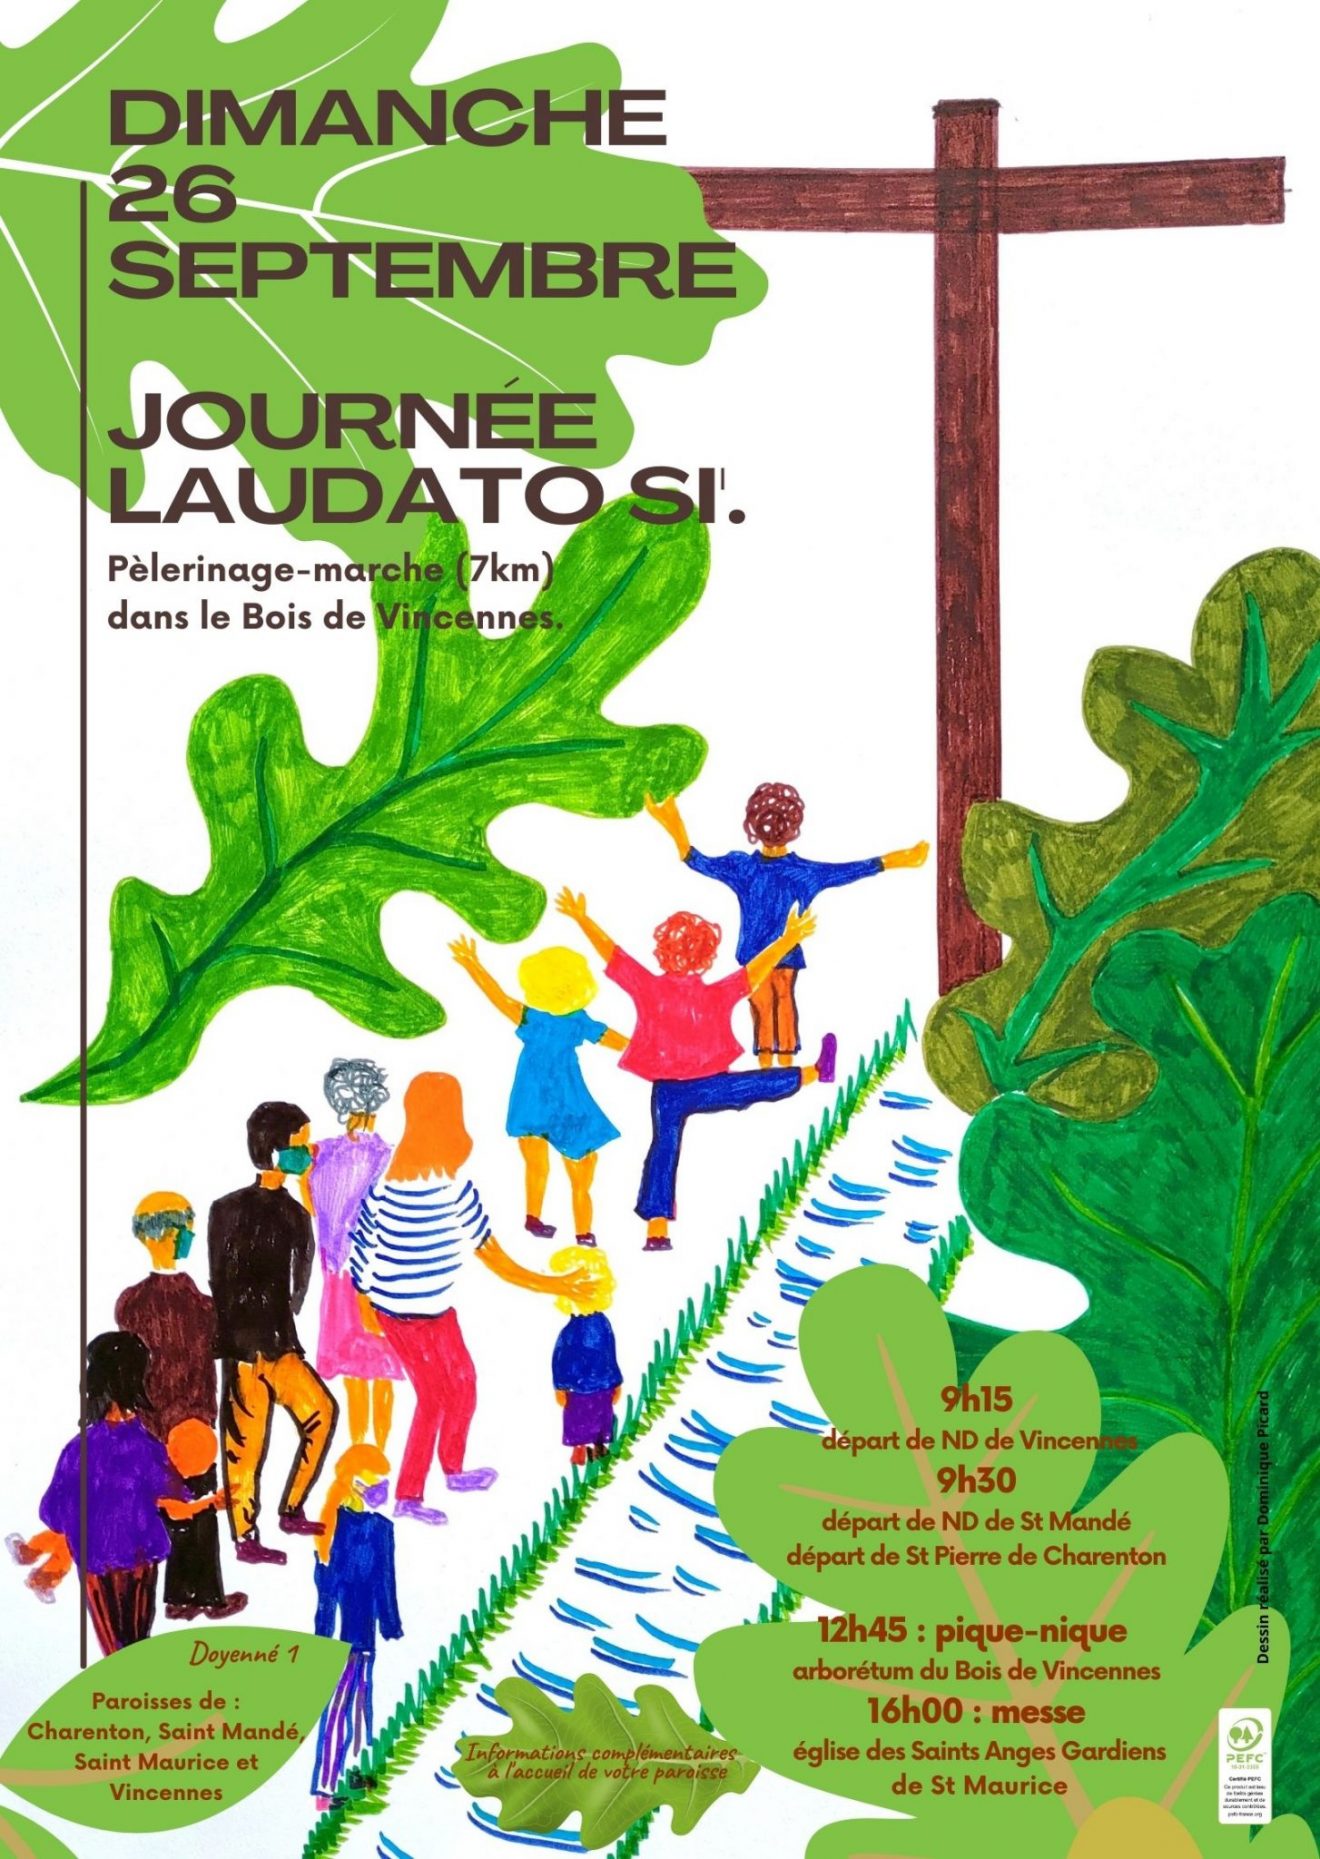 Journée Laudato Si le 26 septembre : pèlerinage-marche dans le bois de Vincennes